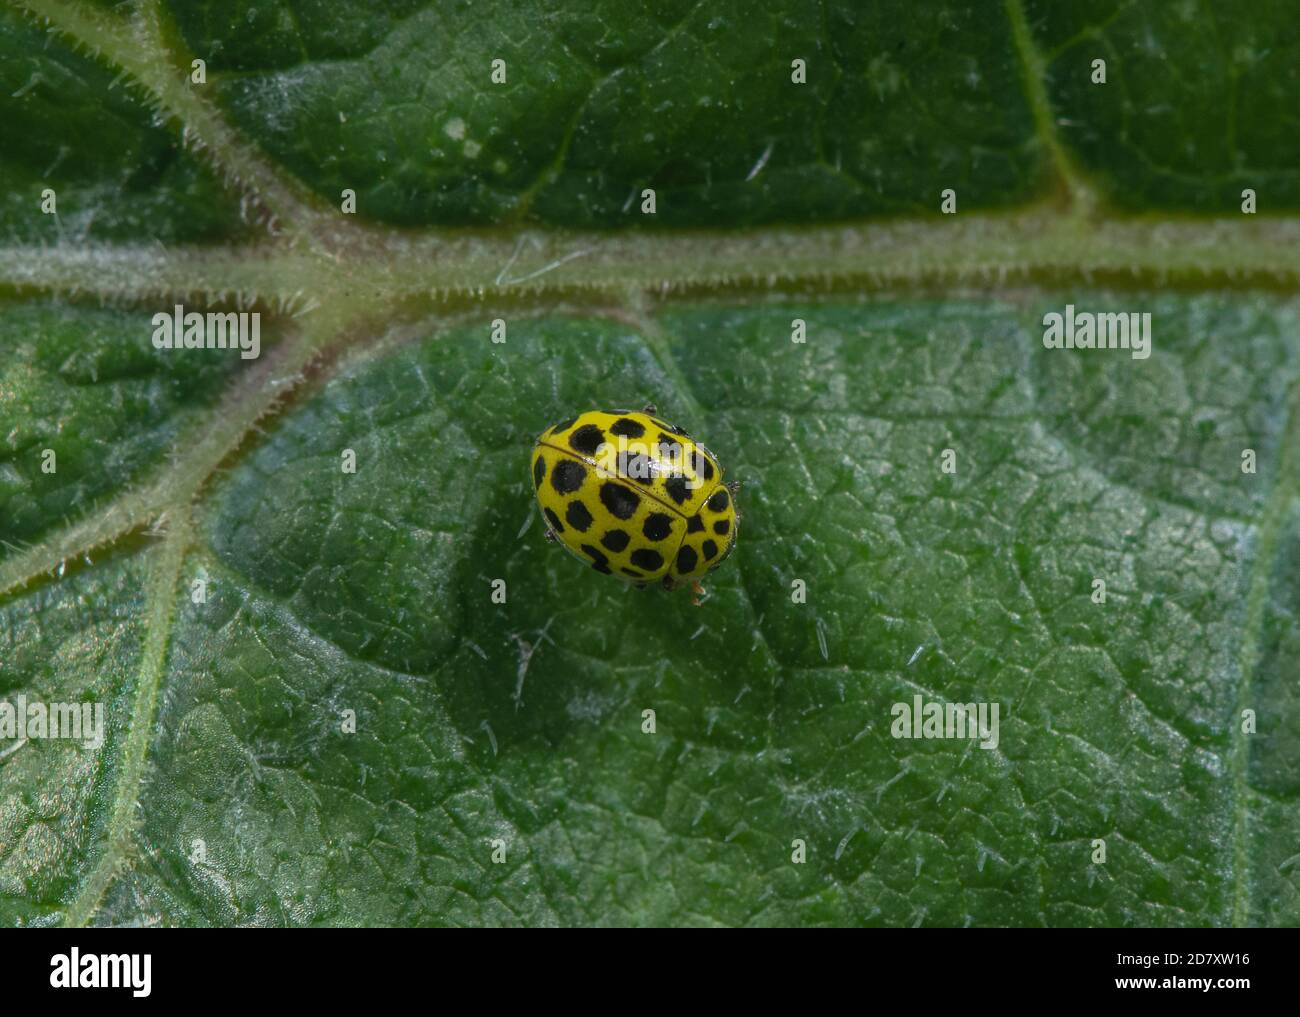 22 Spot Ladybird, Psyllobora vigintiduopunctata, sulla superficie delle foglie. Acqua di muffa. Foto Stock